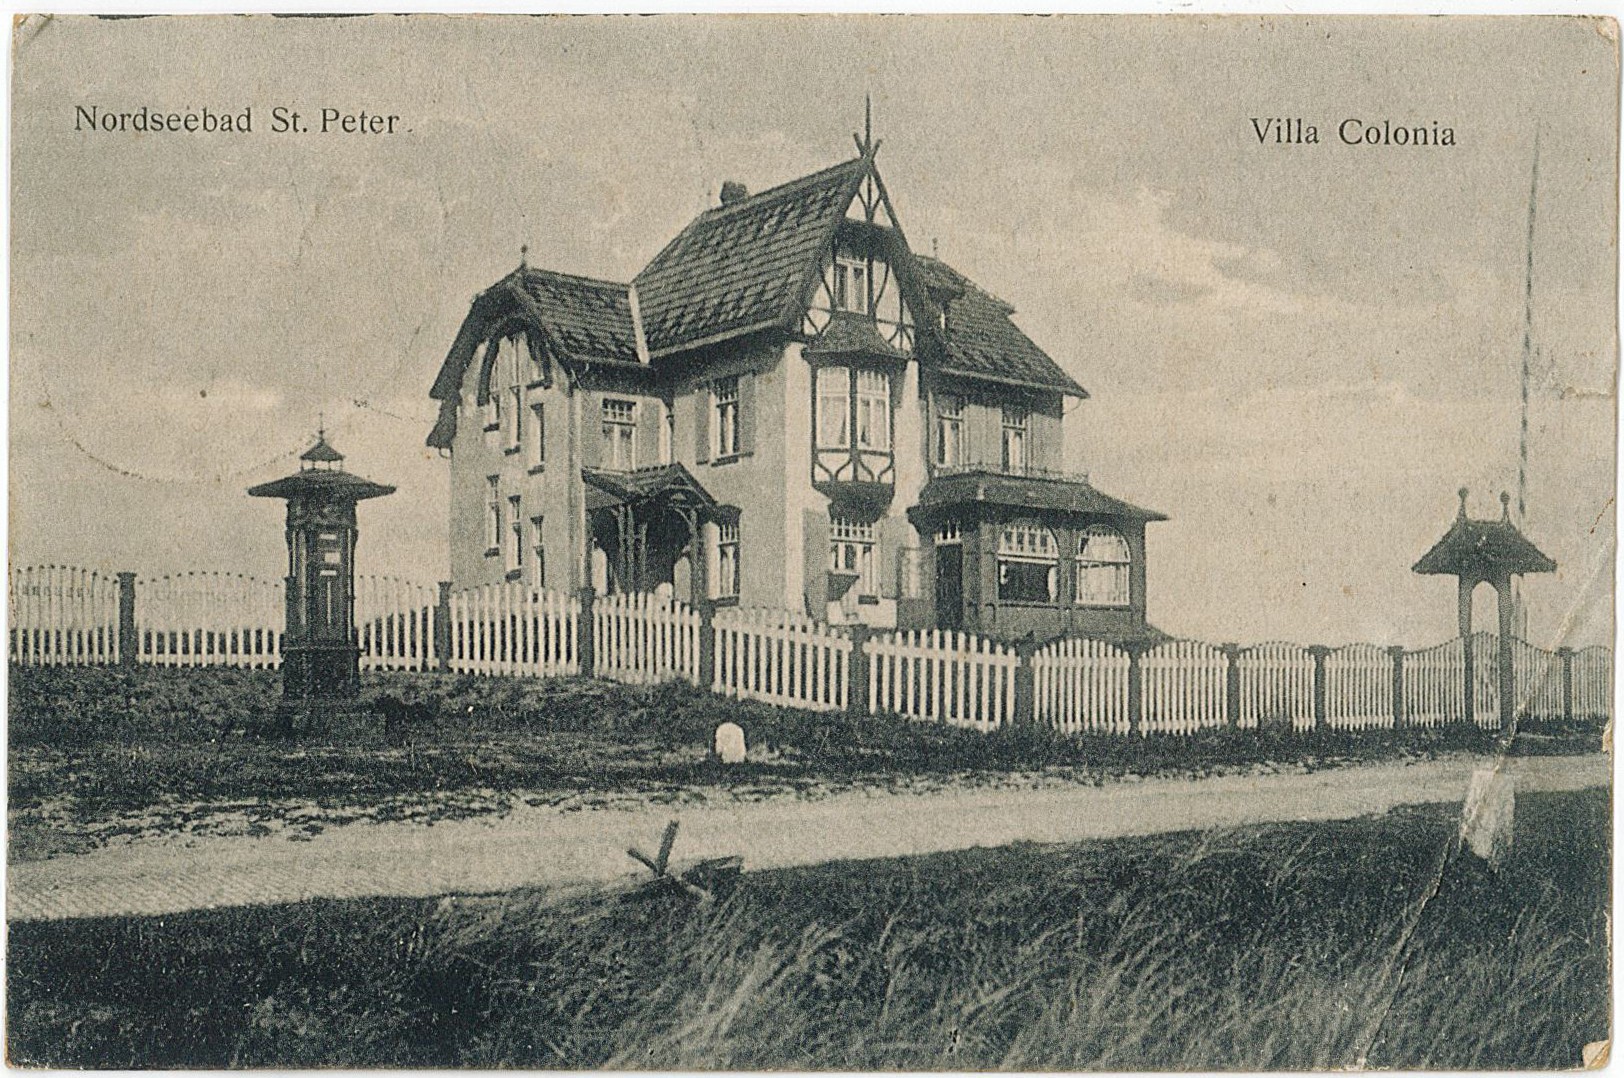 Postkarte von Erich Otto an seinen Vater Hermann Otto, 09.05.1921 (Museum Wolmirstedt RR-F)